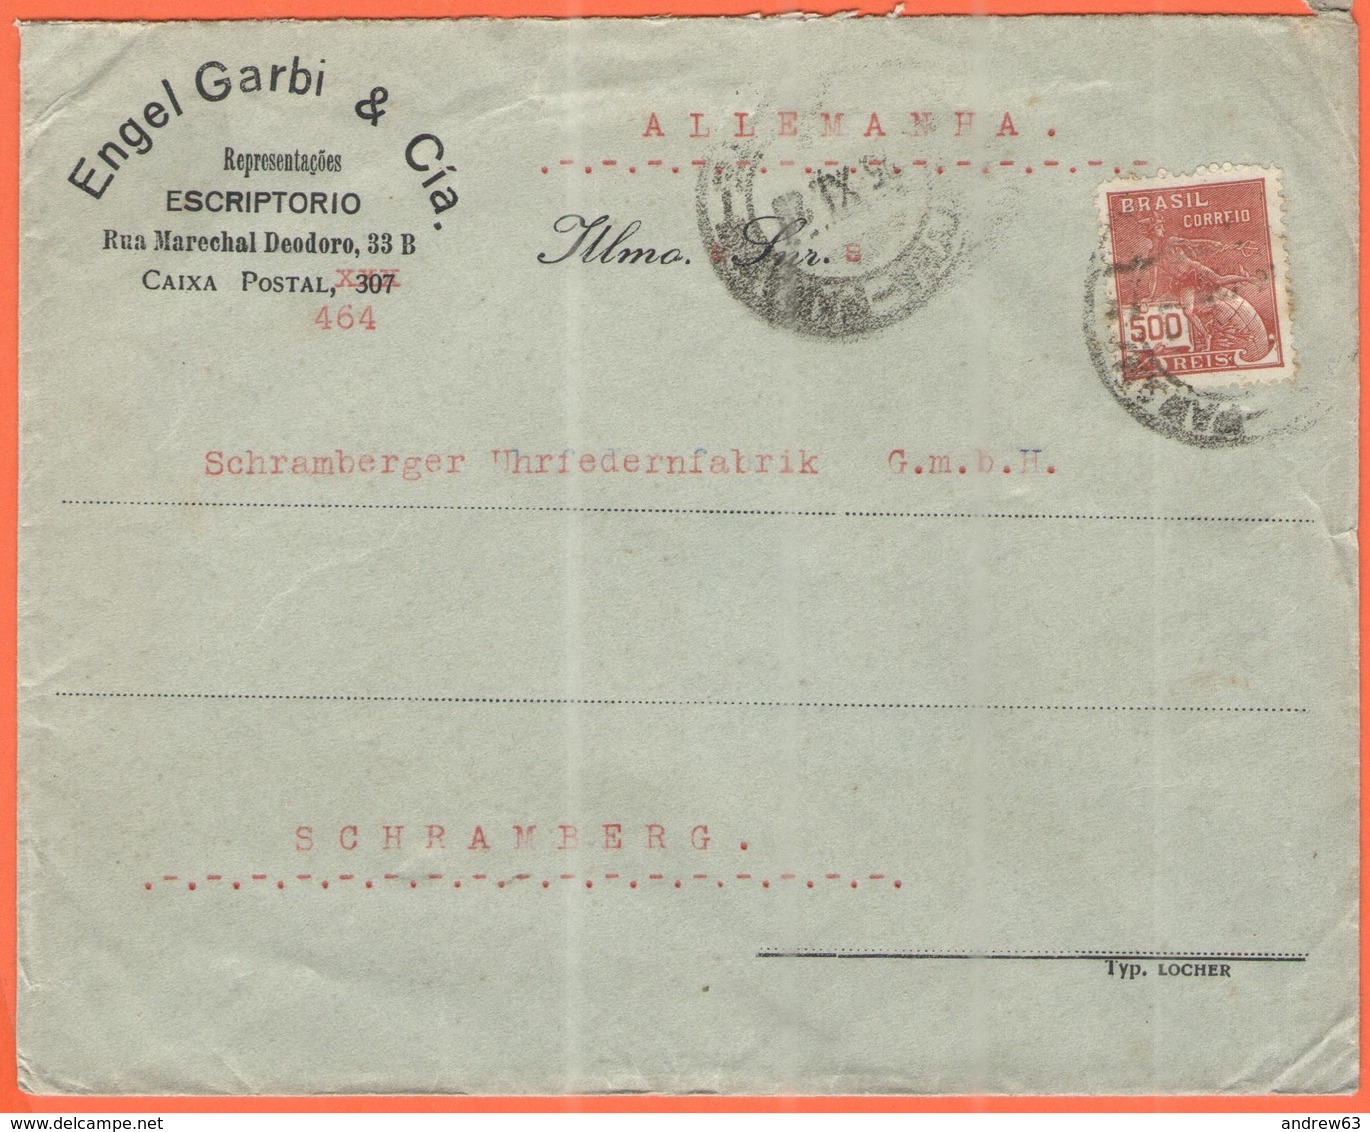 BRASILE - BRASIL - 1929 - 500 Reis - Engel Garbi & Cia - Viaggiata Da Brasil Per Schramberg, Germany - Lettres & Documents